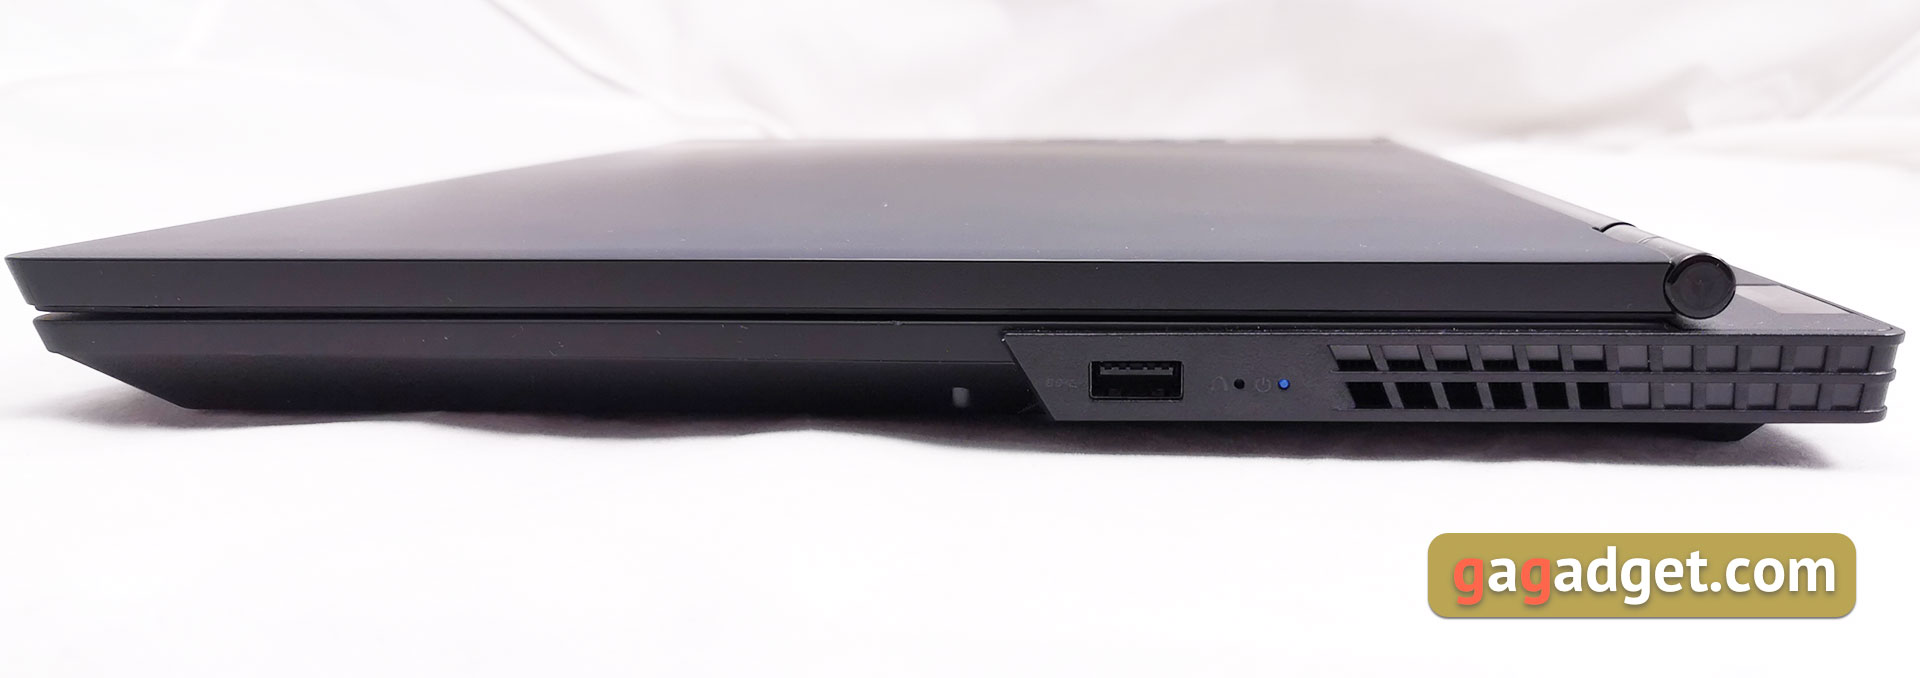 Обзор Lenovo Legion Y530: игровой ноутбук со строгим дизайном-10